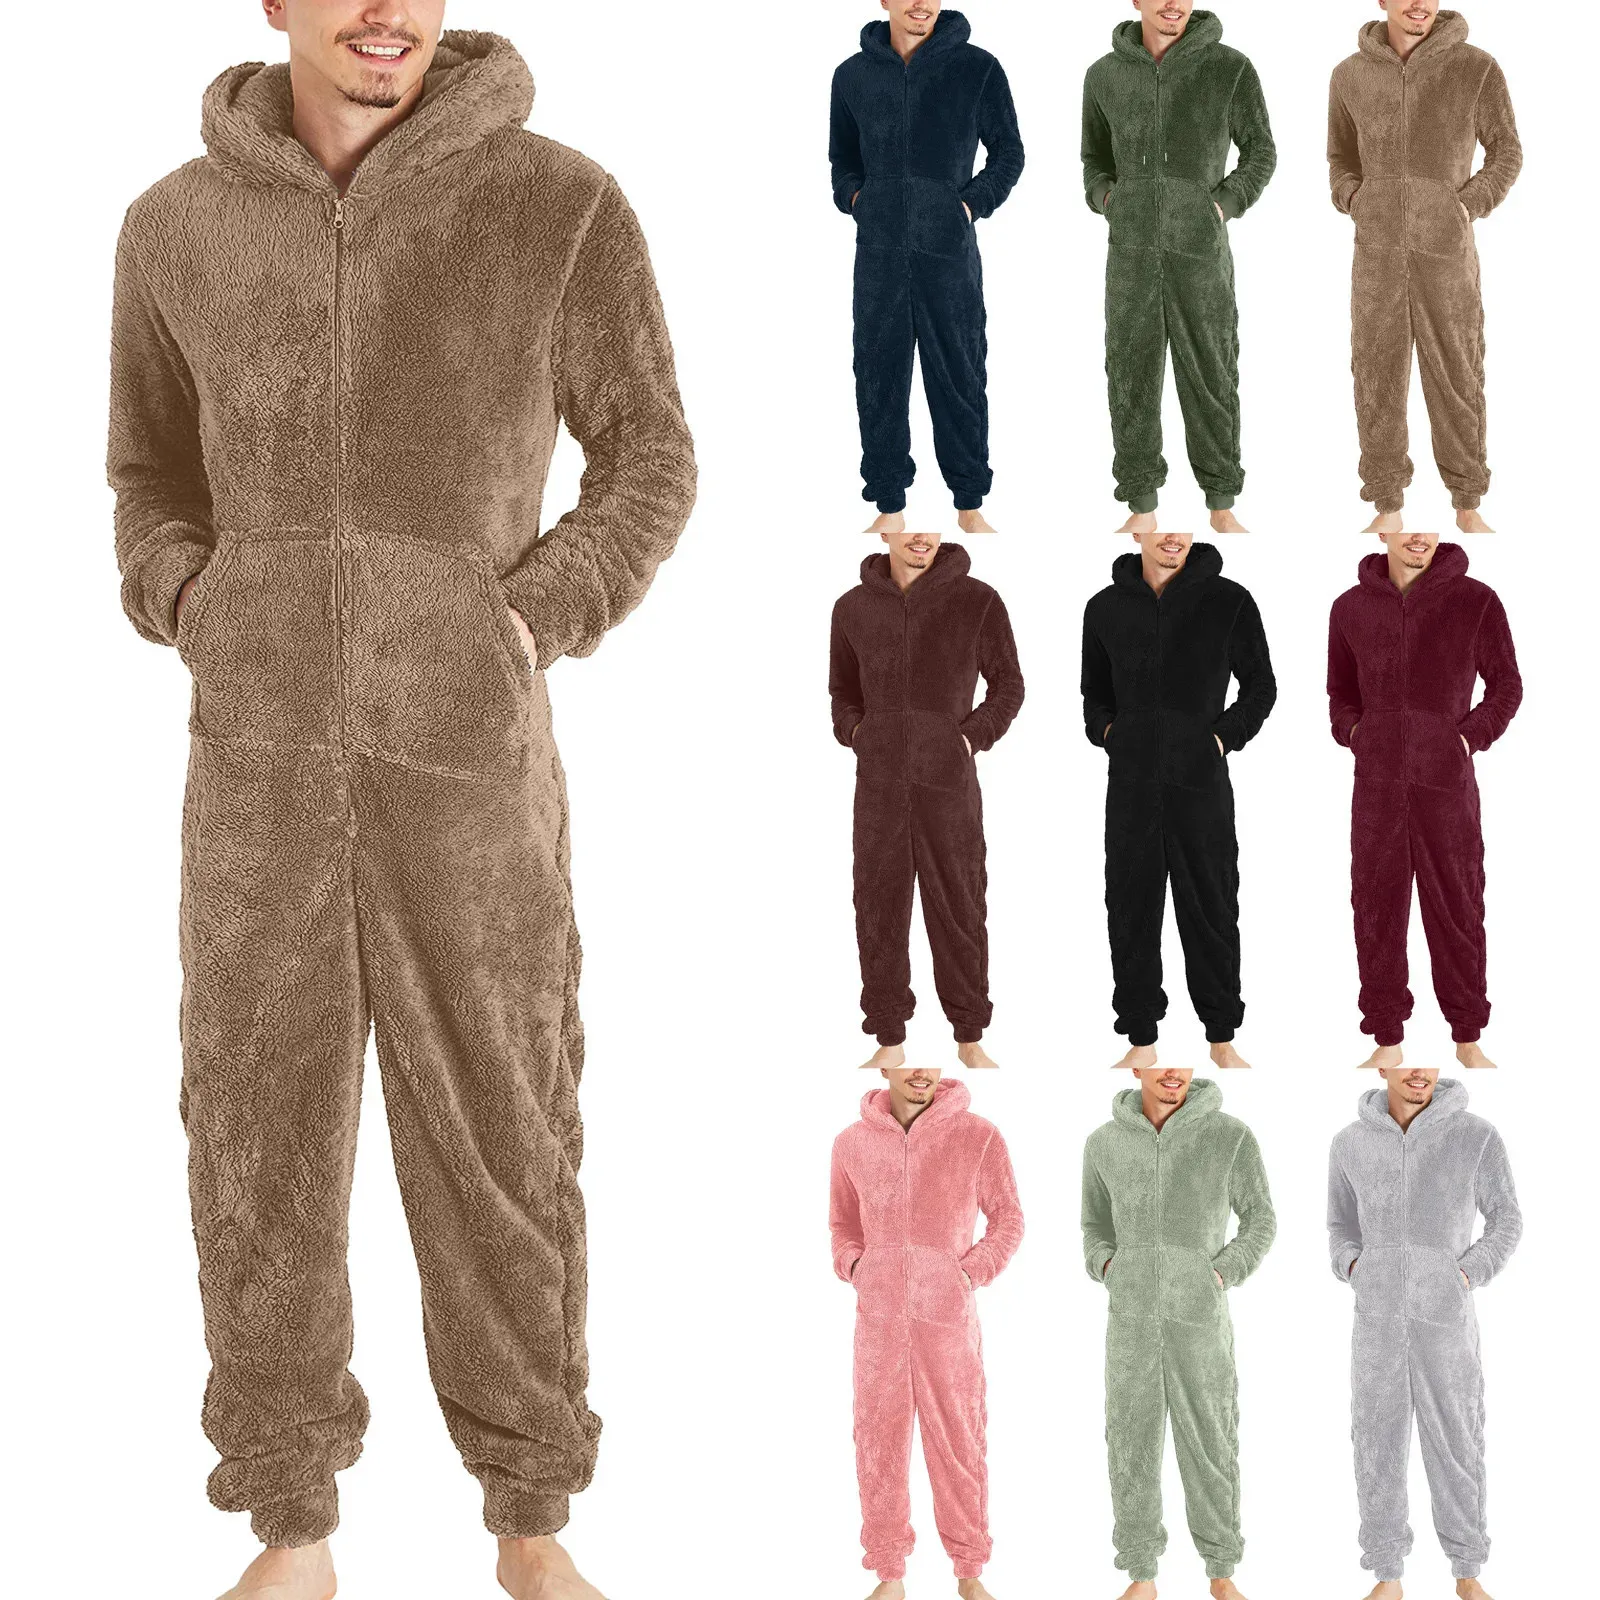 Homens sleepwear homens artificial lã manga longa pijama casual cor sólida zíper solto com capuz macacão inverno quente rompe 1 231102